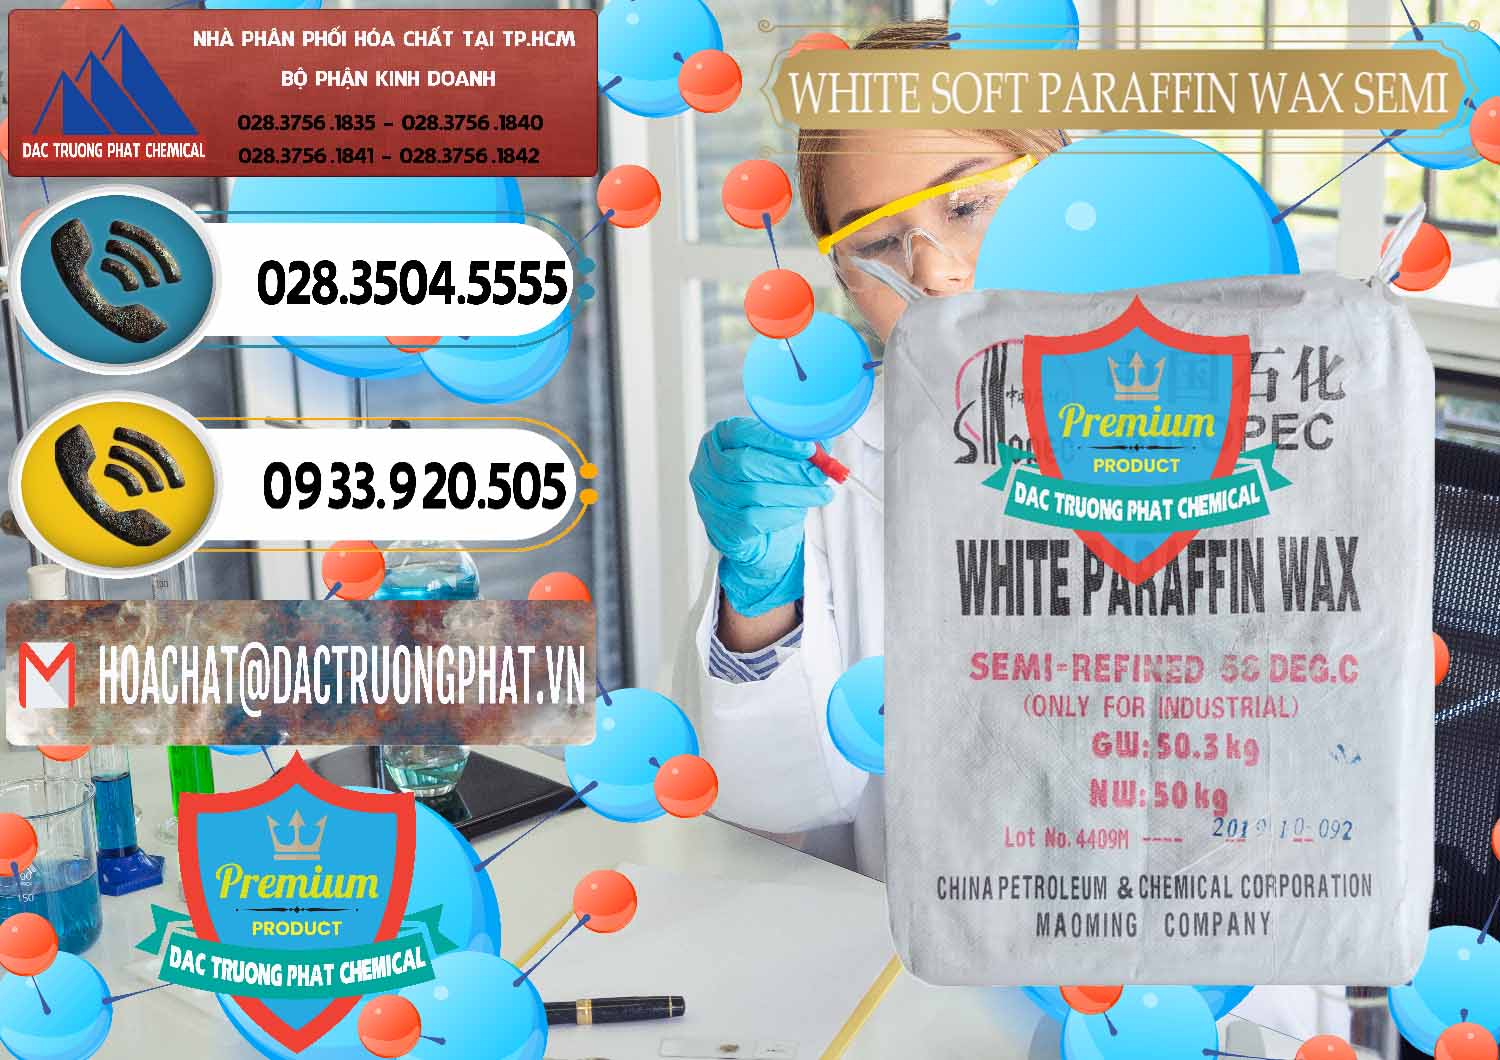 Công ty chuyên bán - cung ứng Sáp Paraffin Wax Sinopec Trung Quốc China - 0328 - Đơn vị cung cấp và nhập khẩu hóa chất tại TP.HCM - hoachatdetnhuom.vn